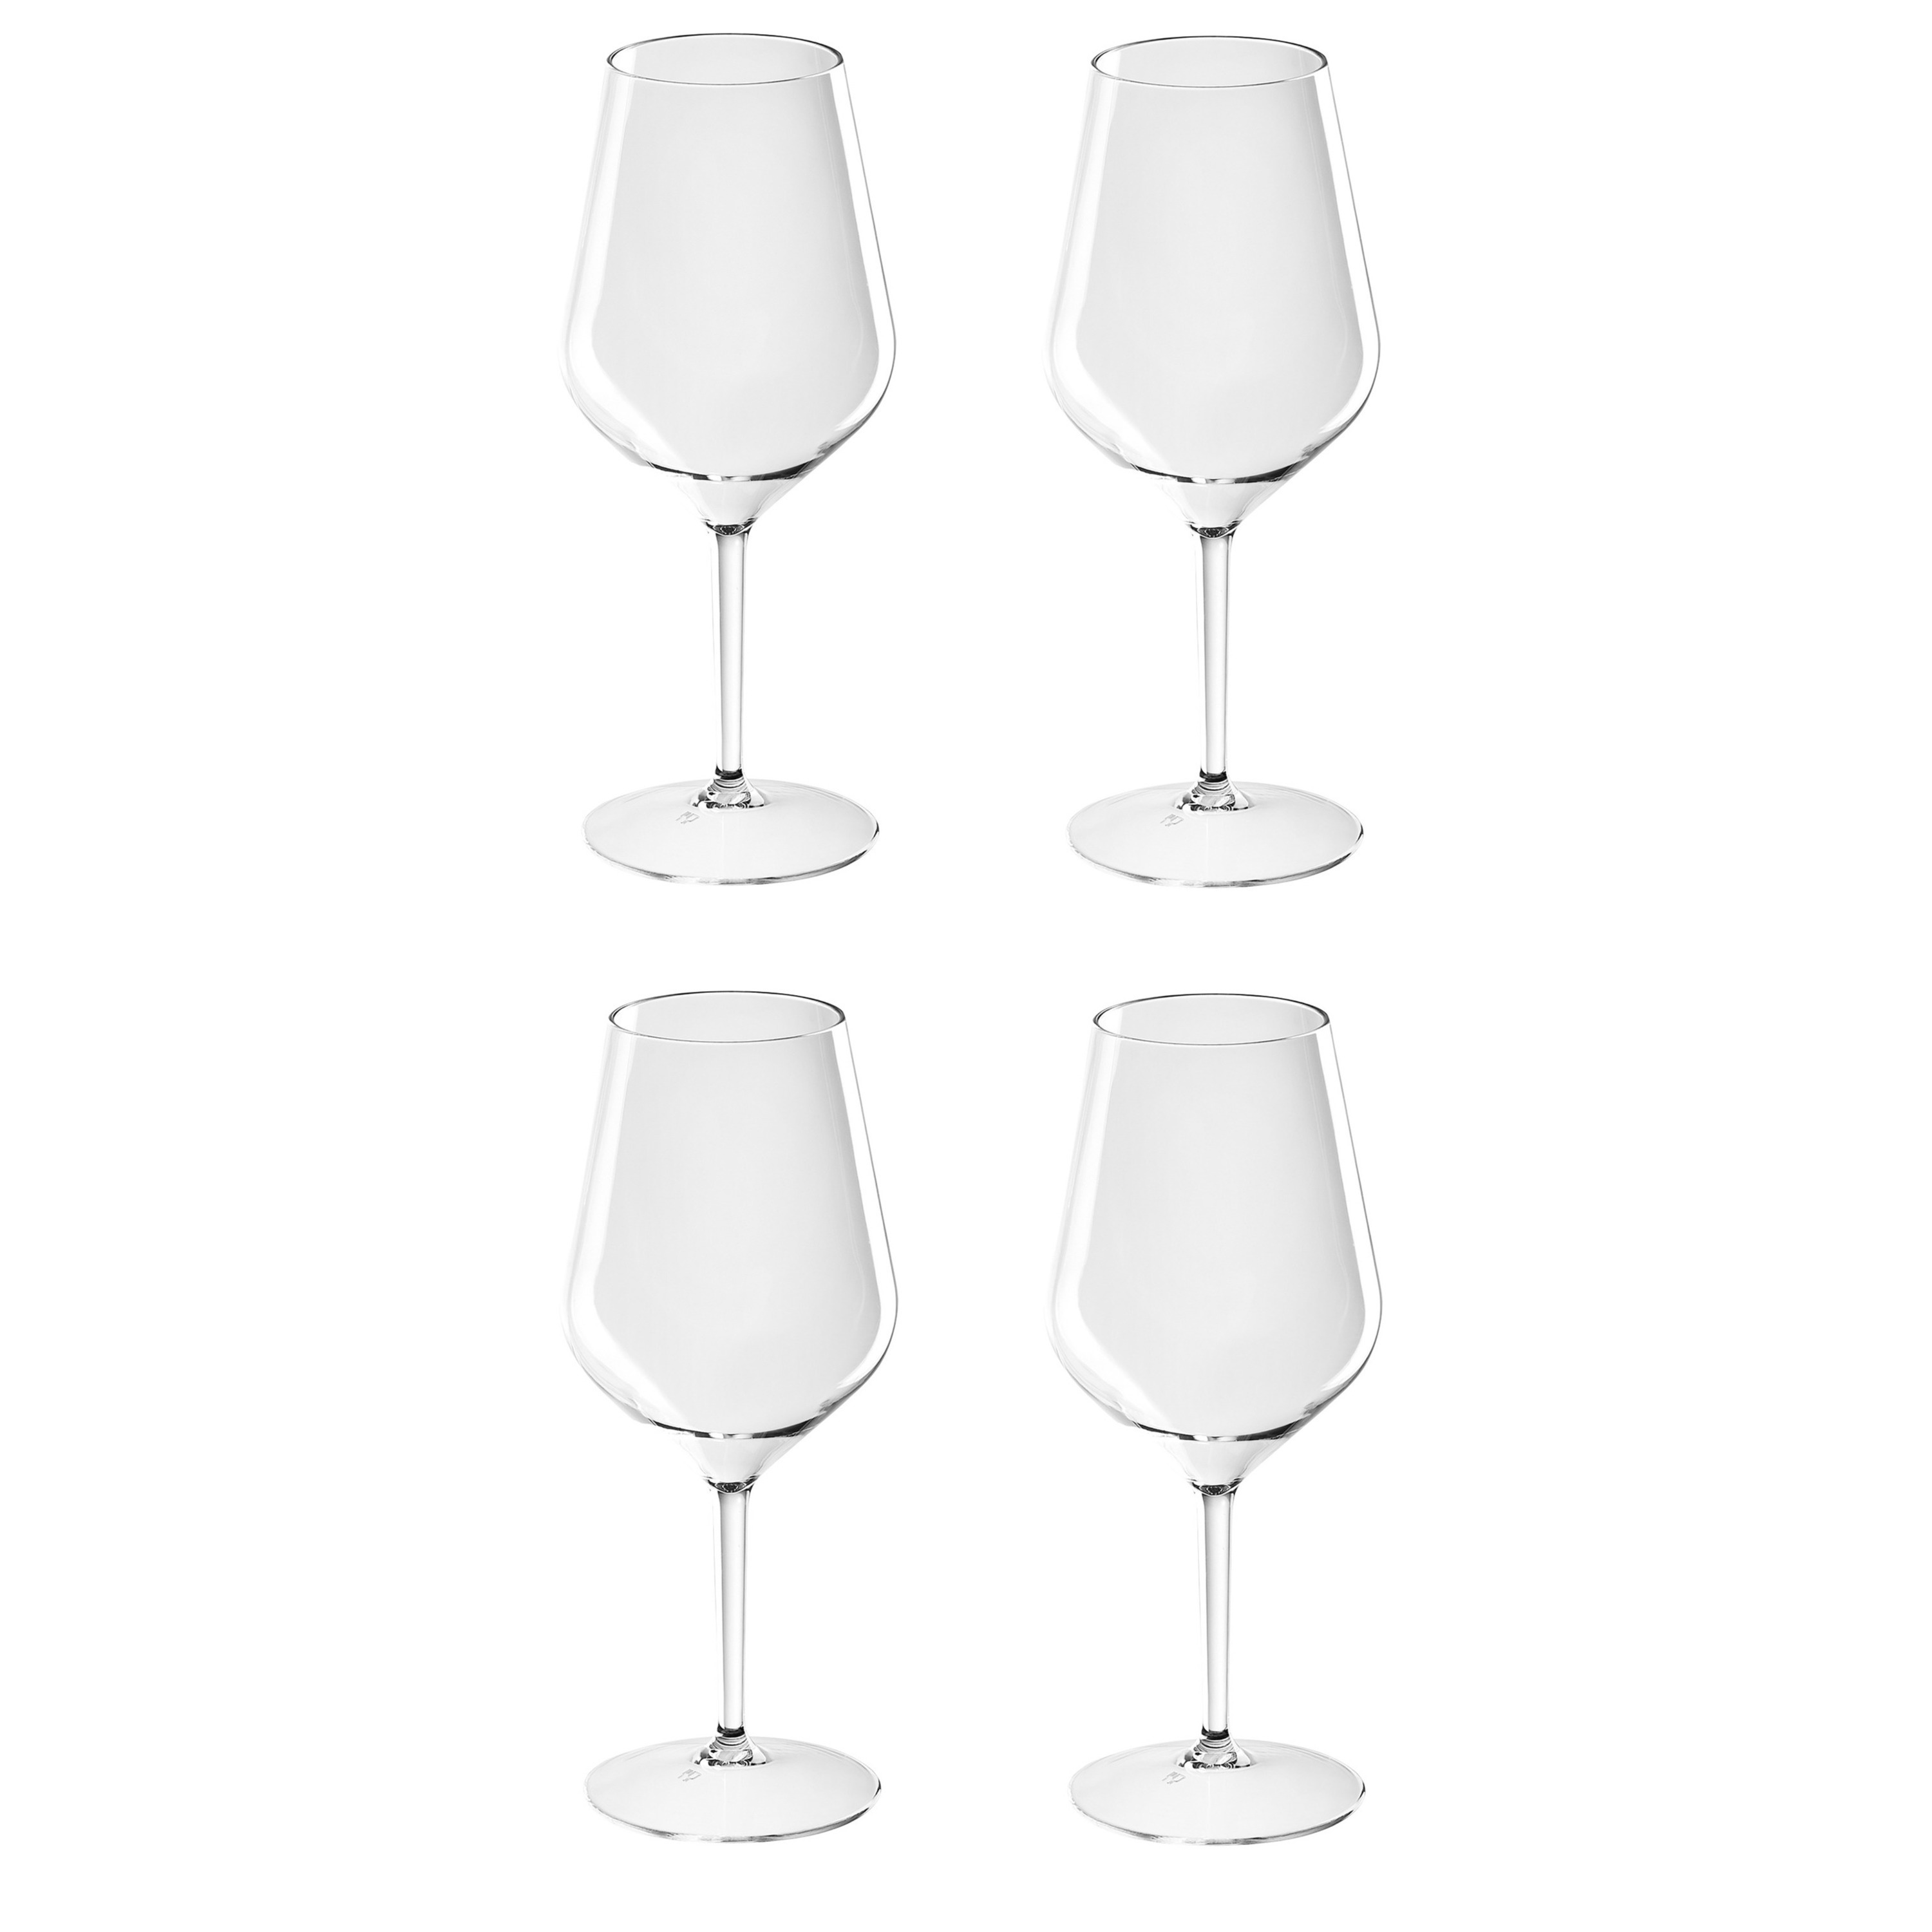 4x Witte of rode wijn glazen 47 cl-470 ml van onbreekbaar kunststof